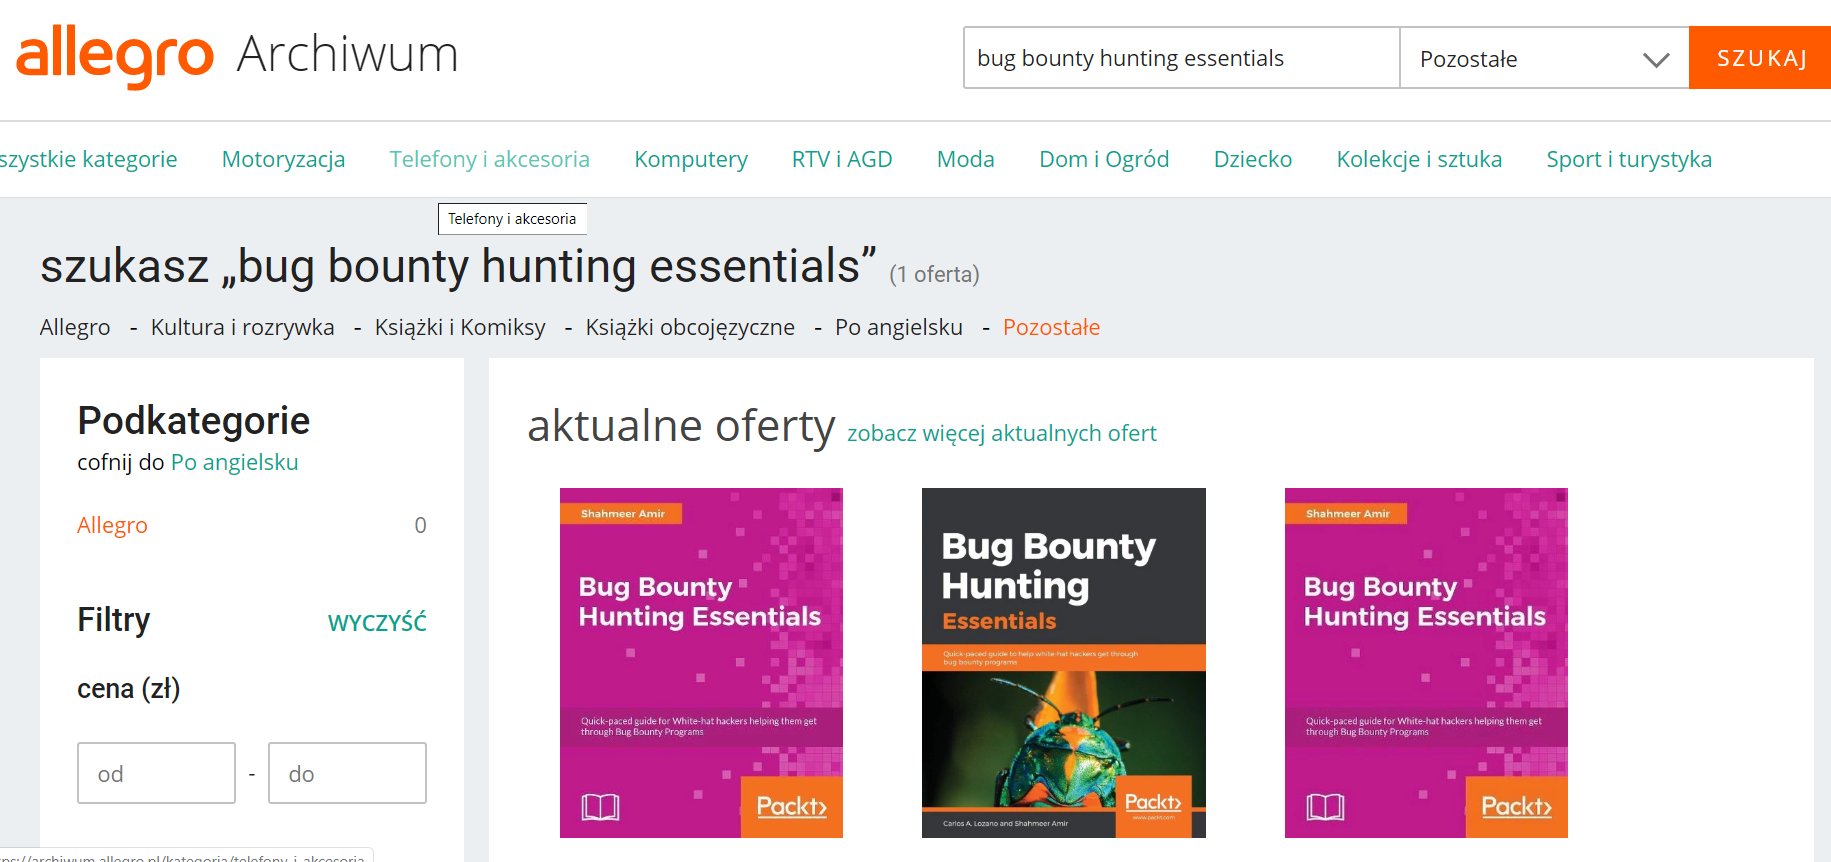 Bug bounty – Allegro płaci za szukanie luk. Do dzieła